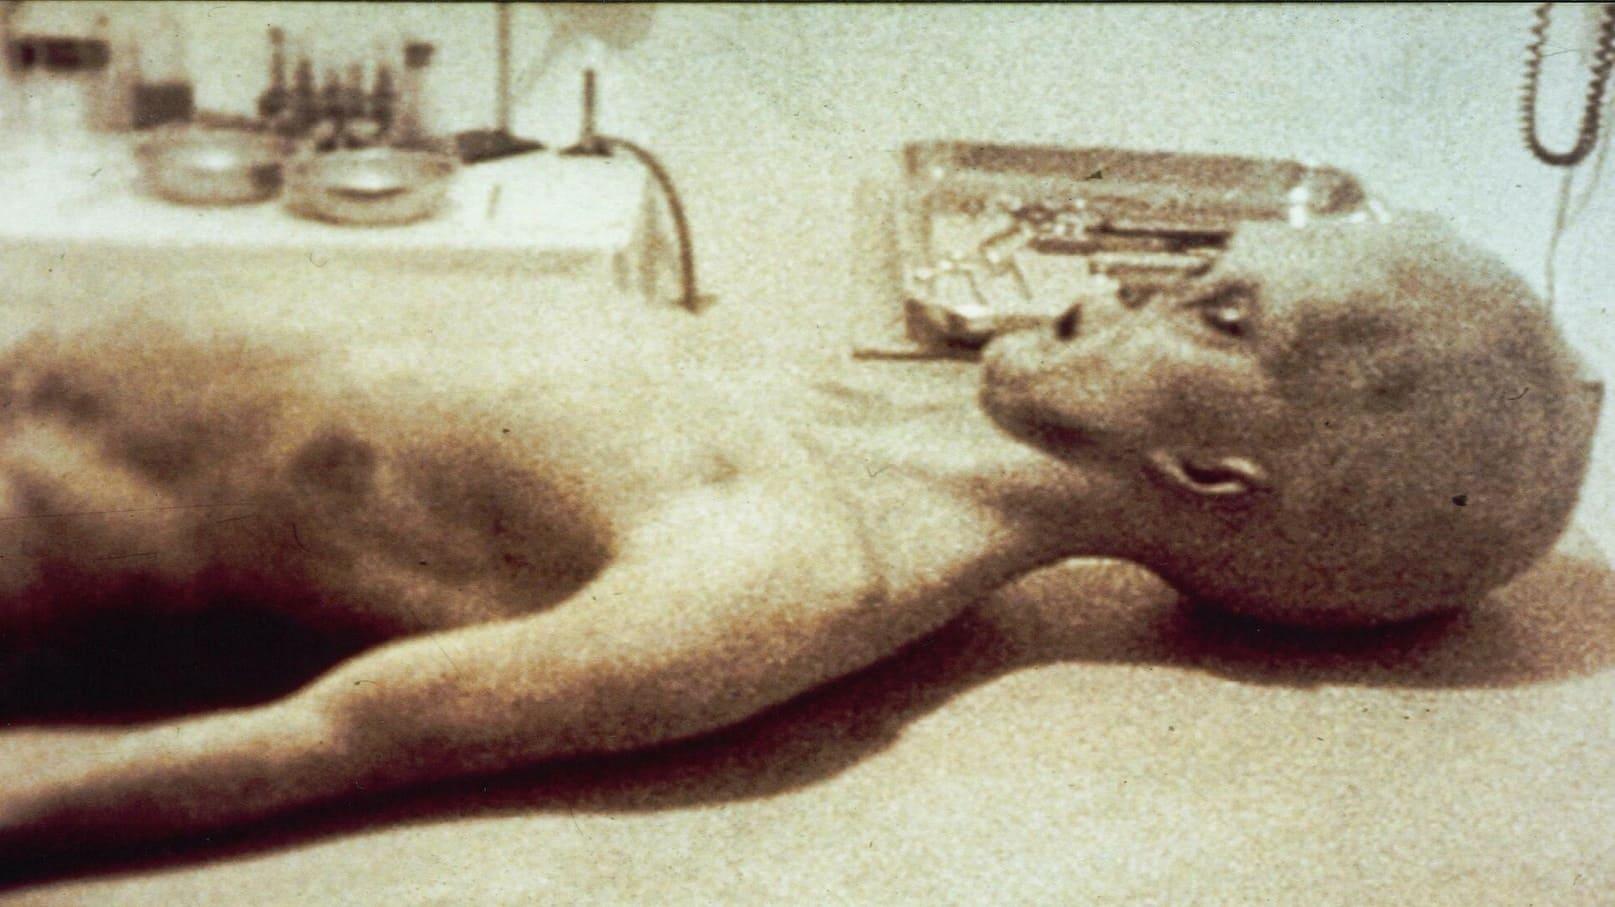 The Alien Autopsy backdrop